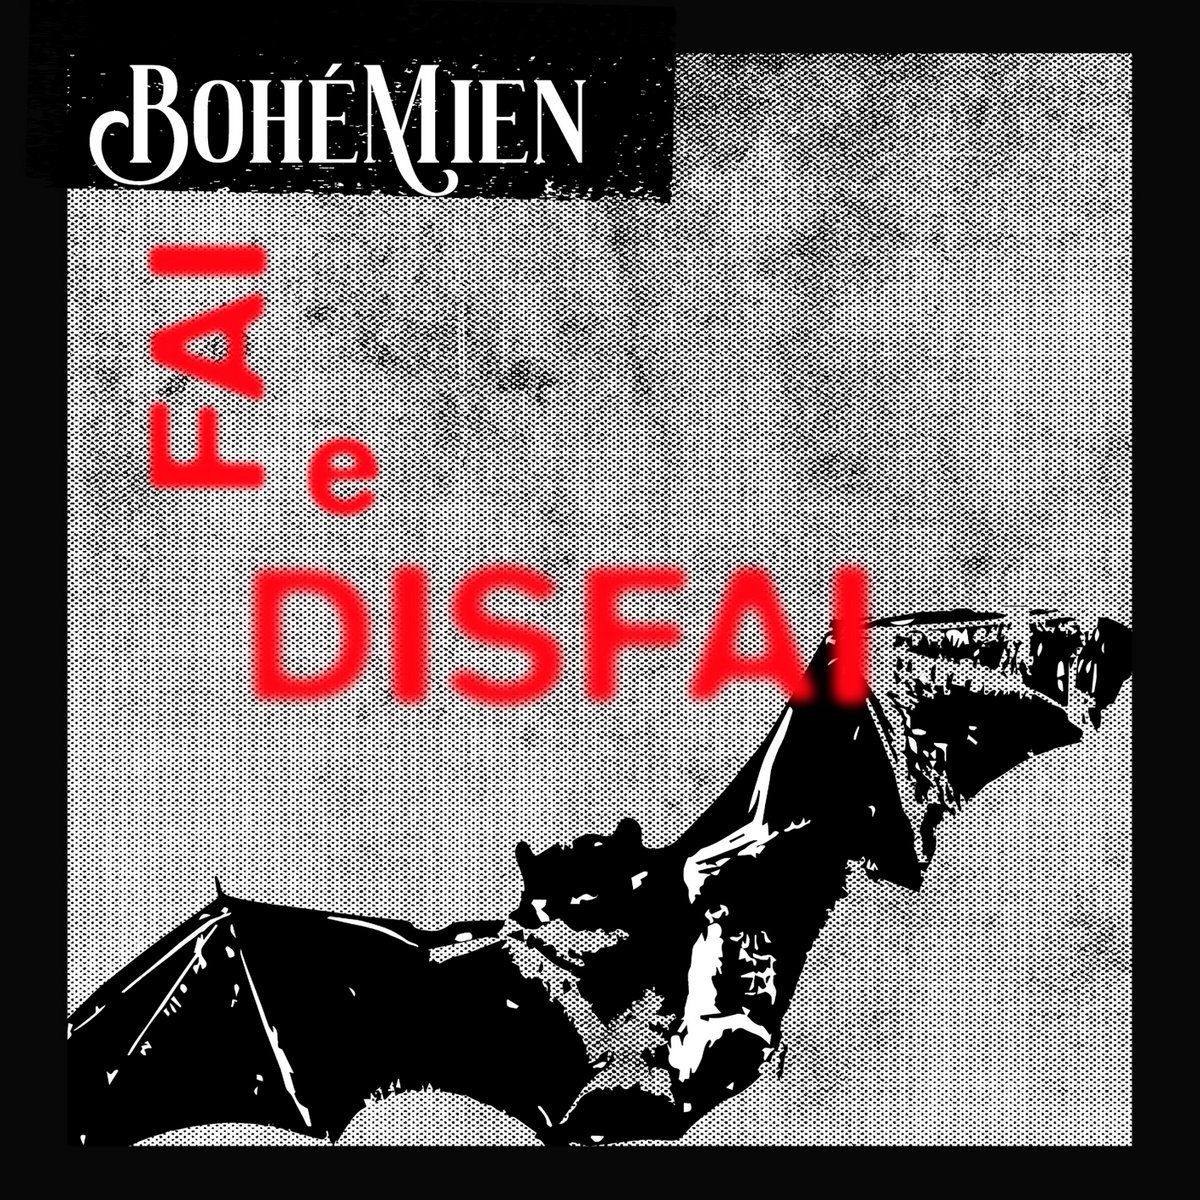 Italian Deathrock Outfit Bohémien Return in Their Video for “Fai e Disfai”